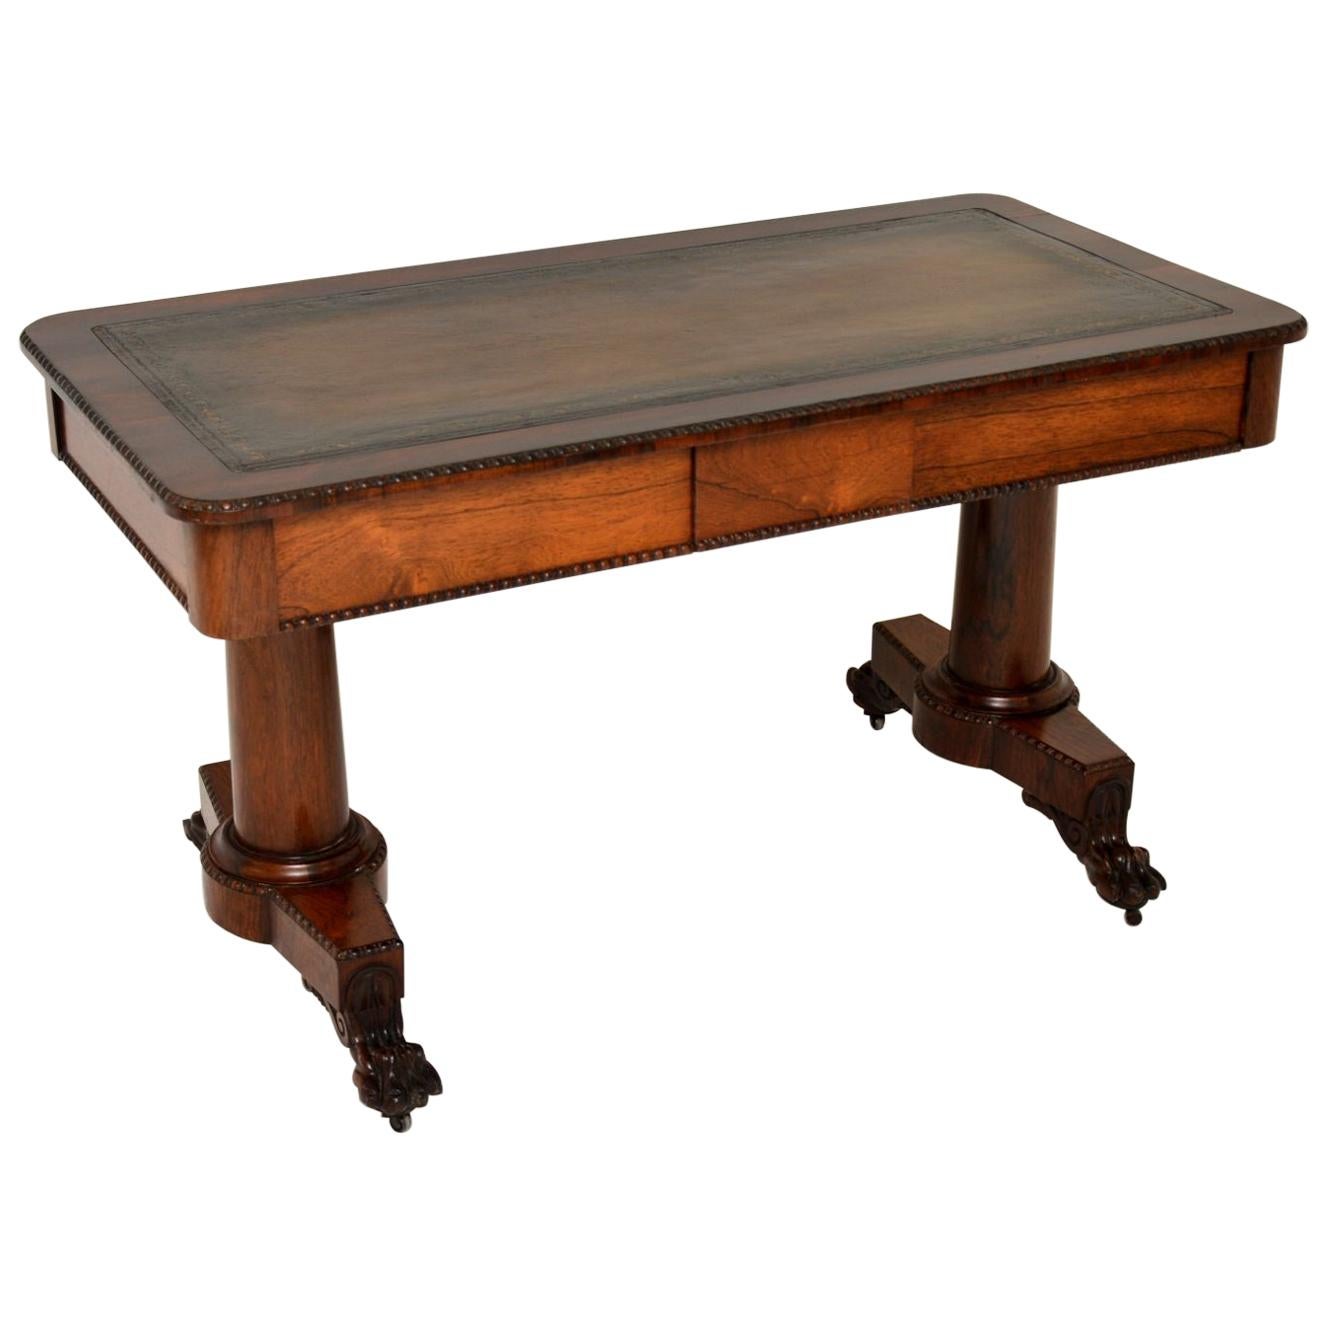 Antique William IV Desk / Writing Table